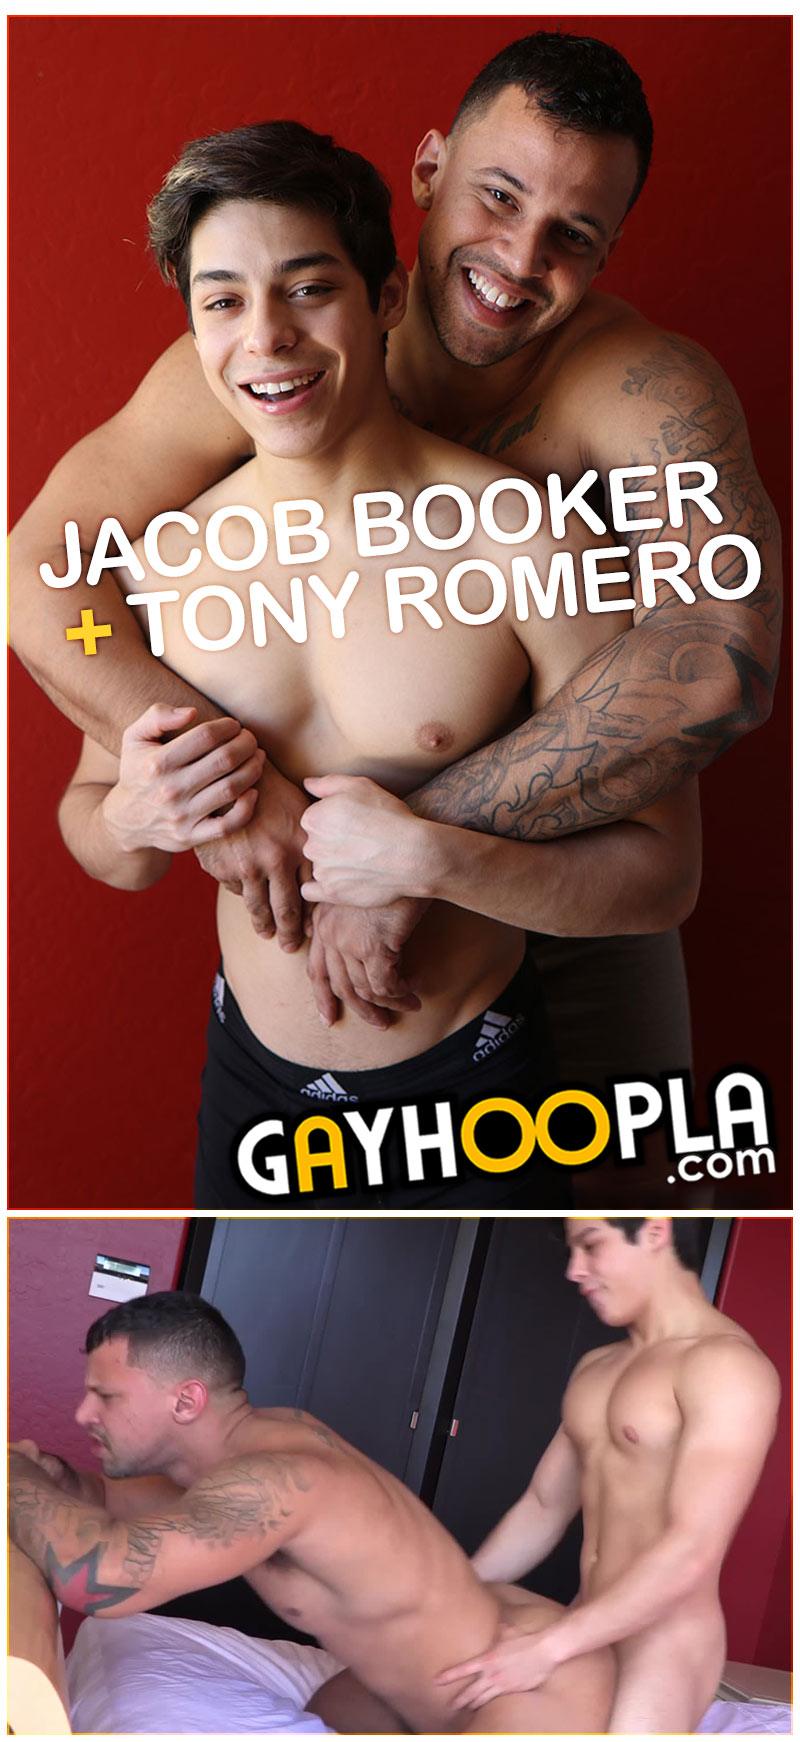 Jacob Booker Fucks Tony Romero at GayHoopla